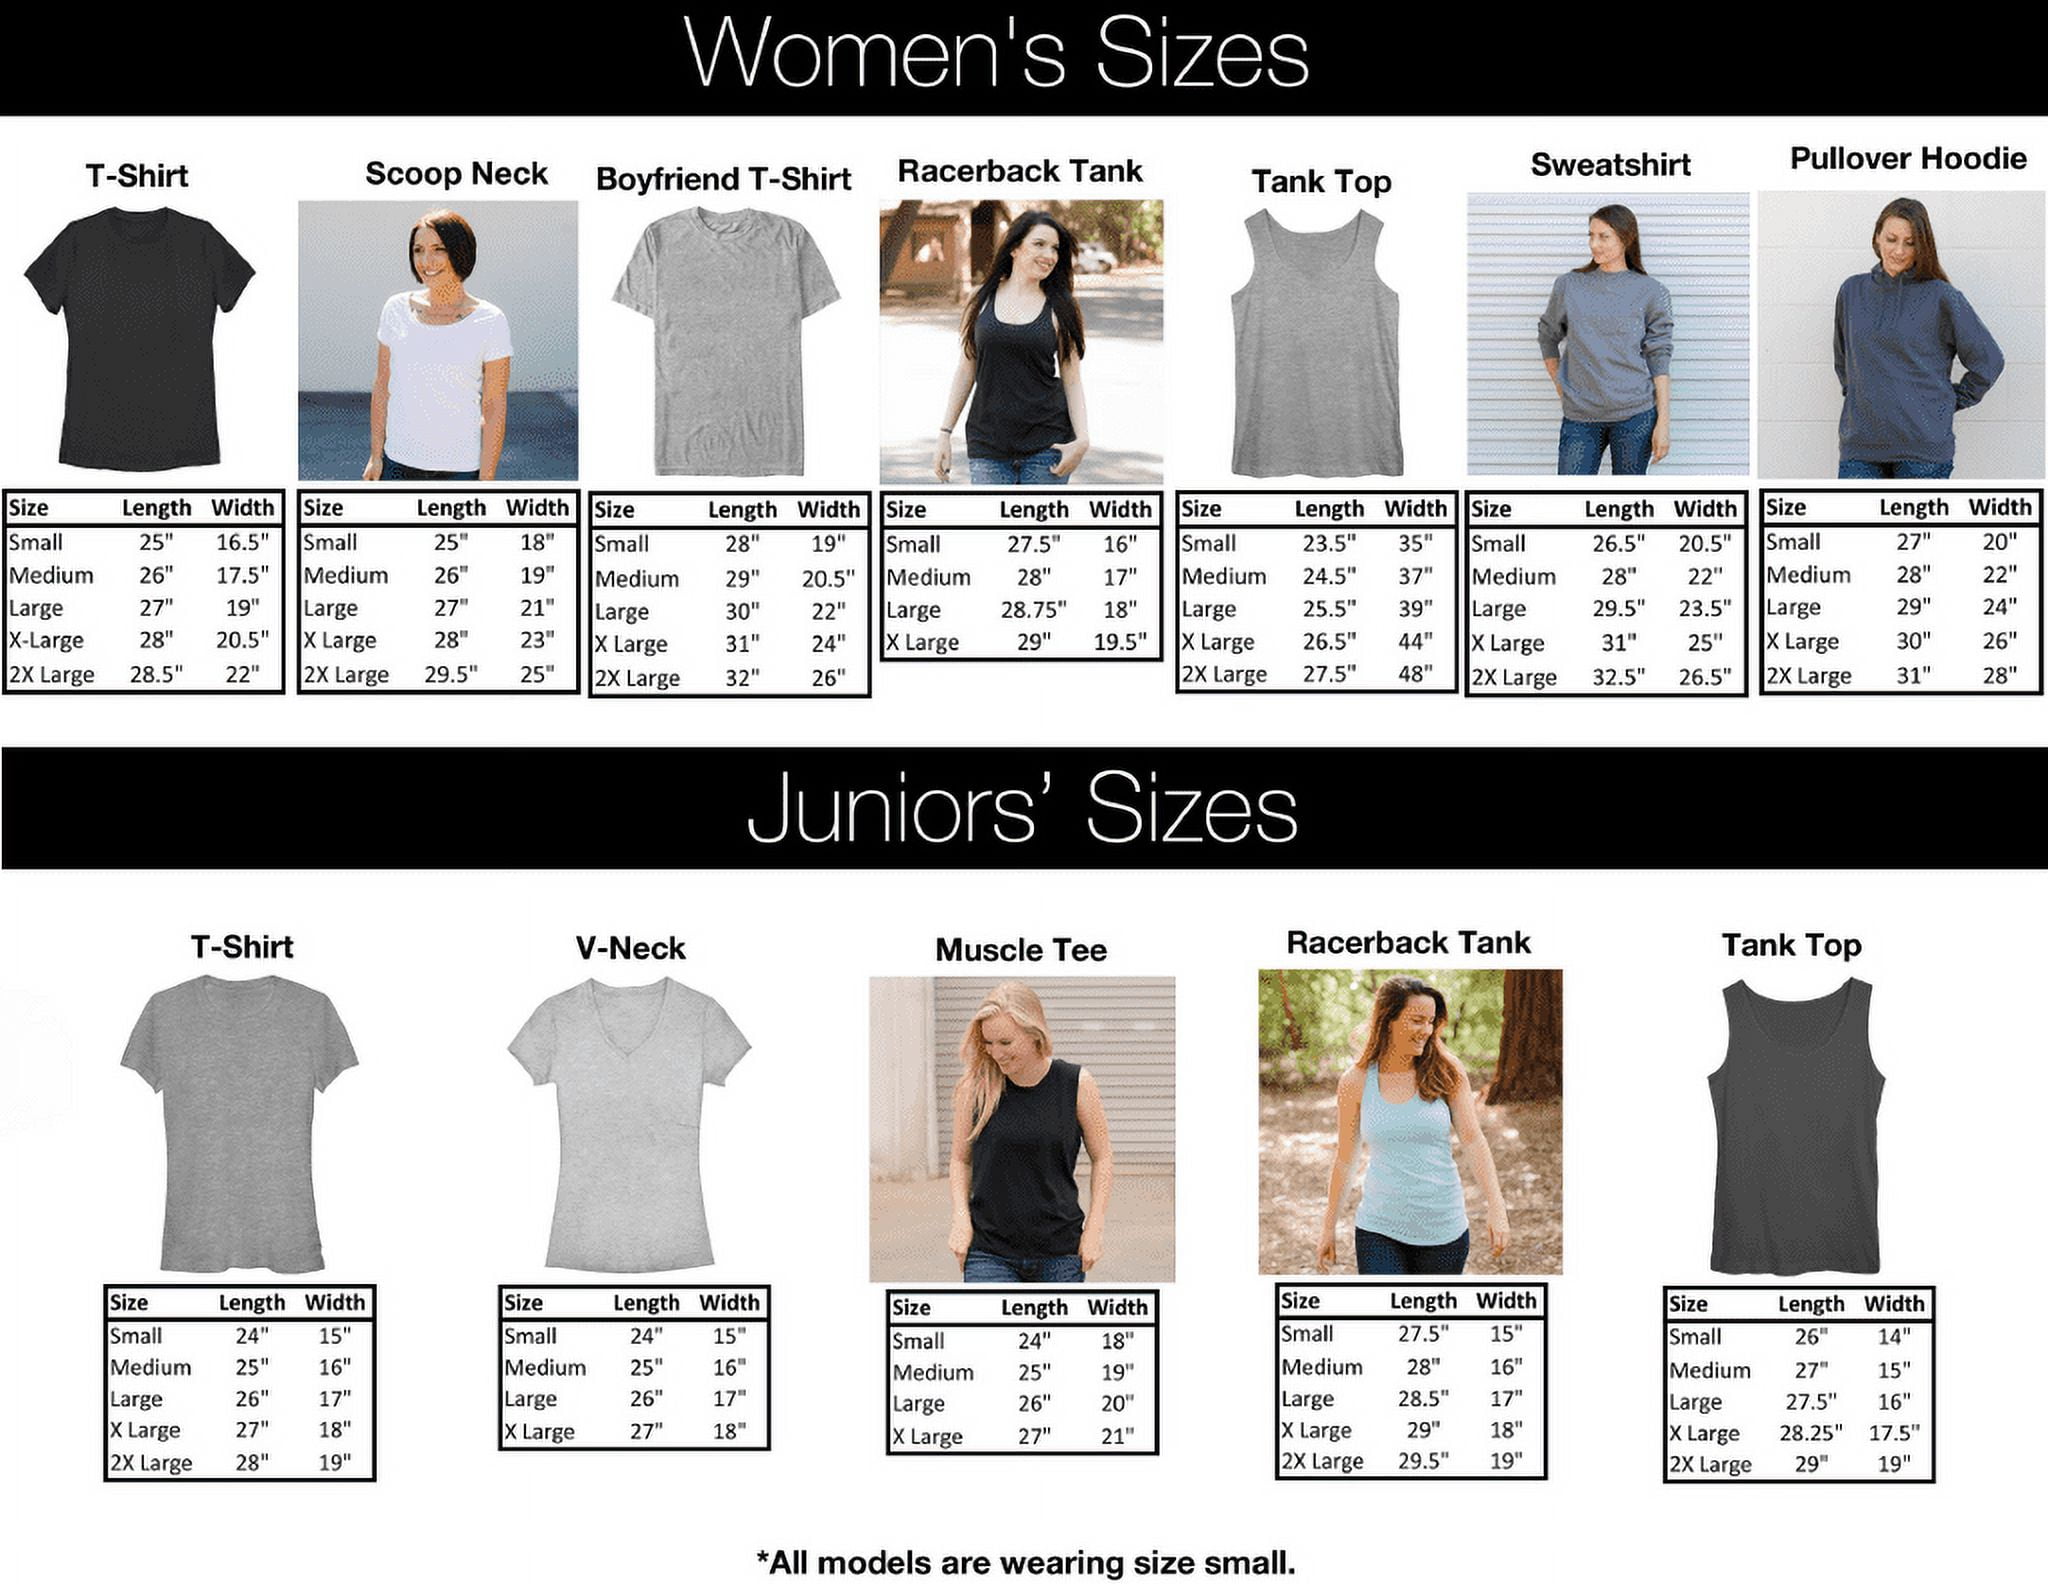 Lilo & Stitch Girls Holiday Graphic T-Shirt, Sizes 4-16 